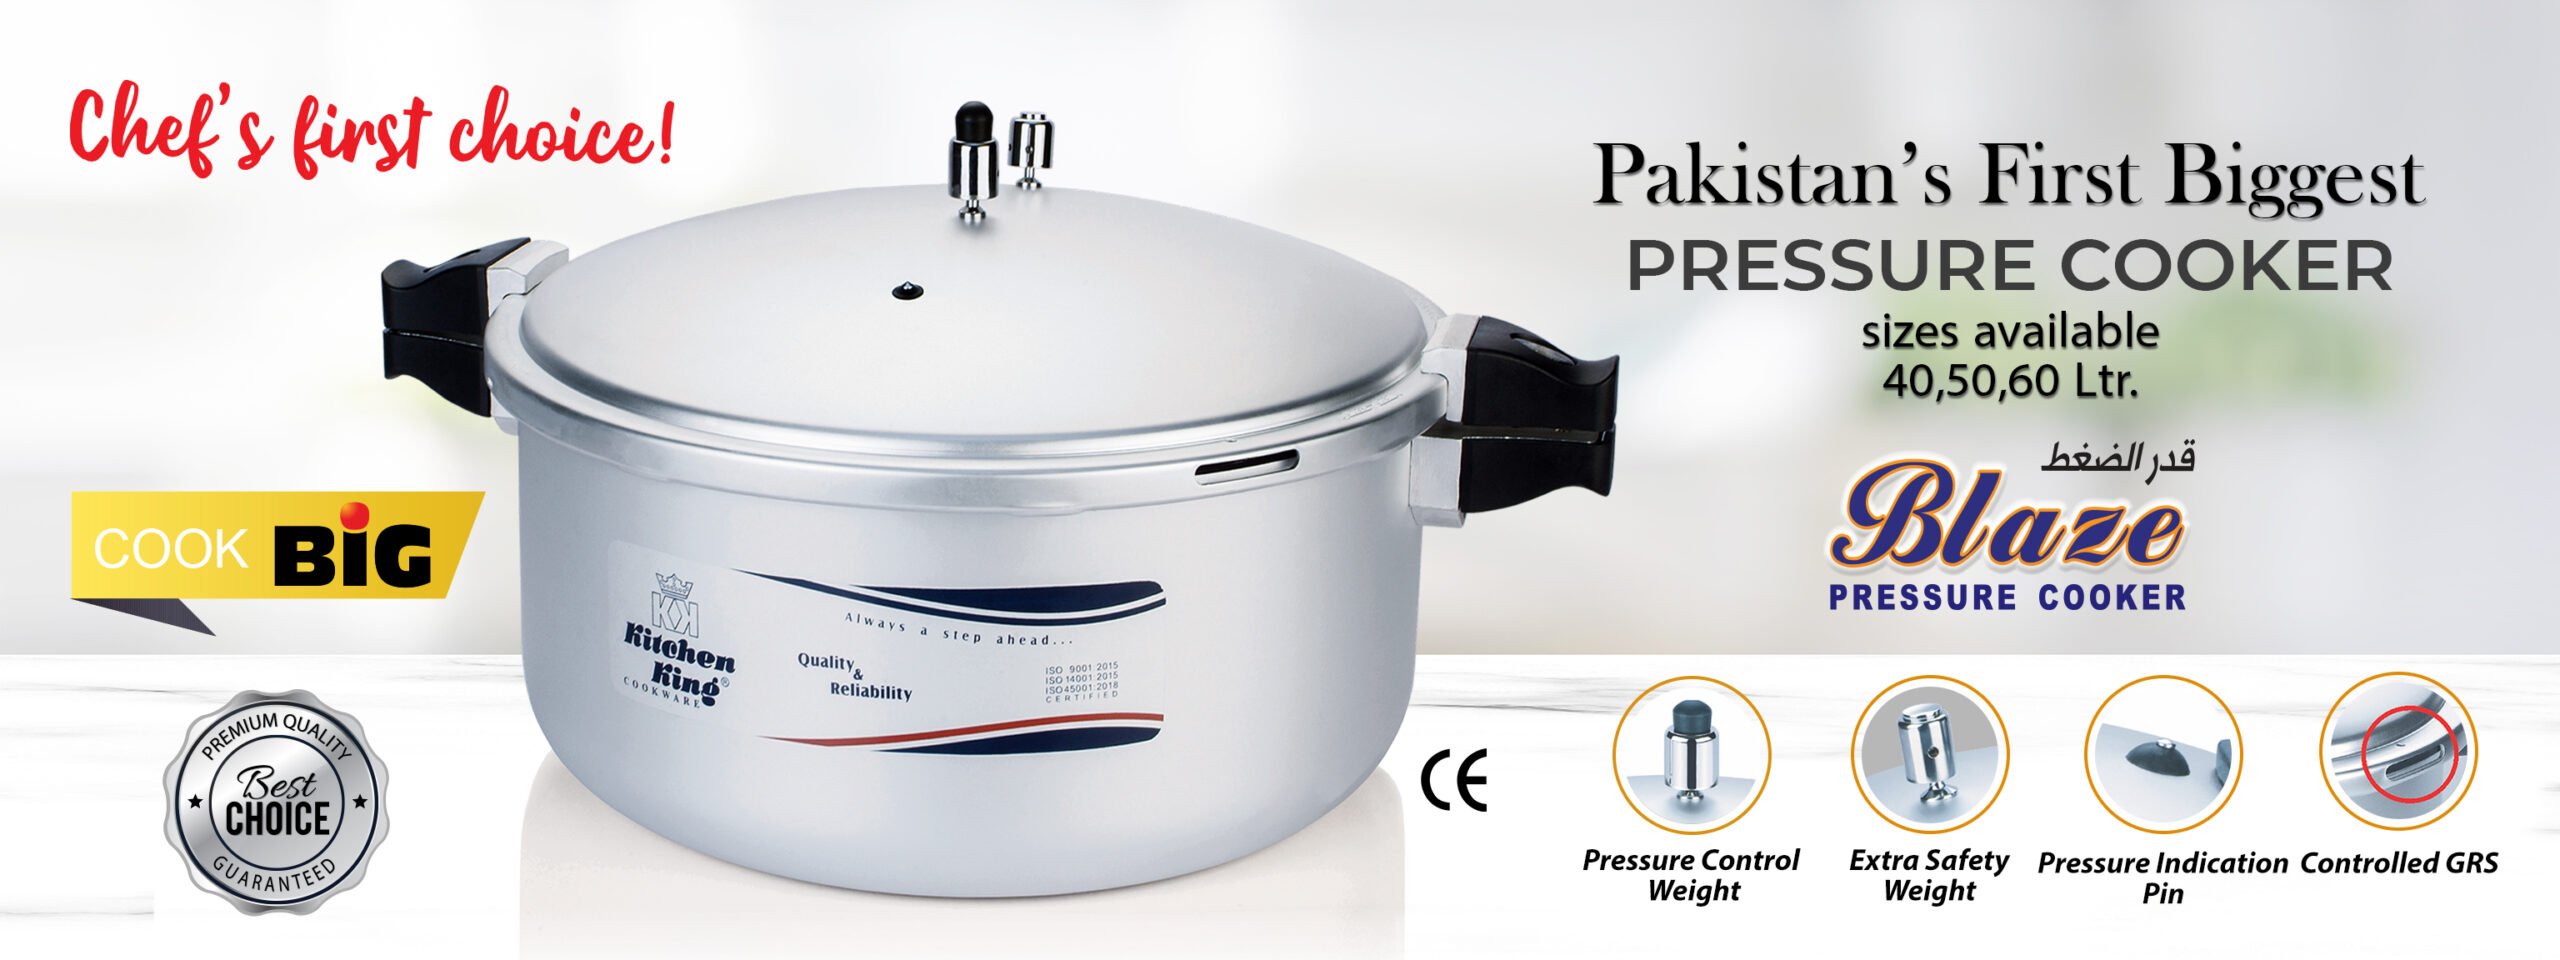 Biggest pressure cooker. huge pressure cooker. best pressure cooker in world. biggest pressure cooker in world. biggest pressure cooker of Pakistan. best pressure cooker in pakistan. cookware set price in pakistan. best nonstick cookware in Pakistan. Kitchen King.